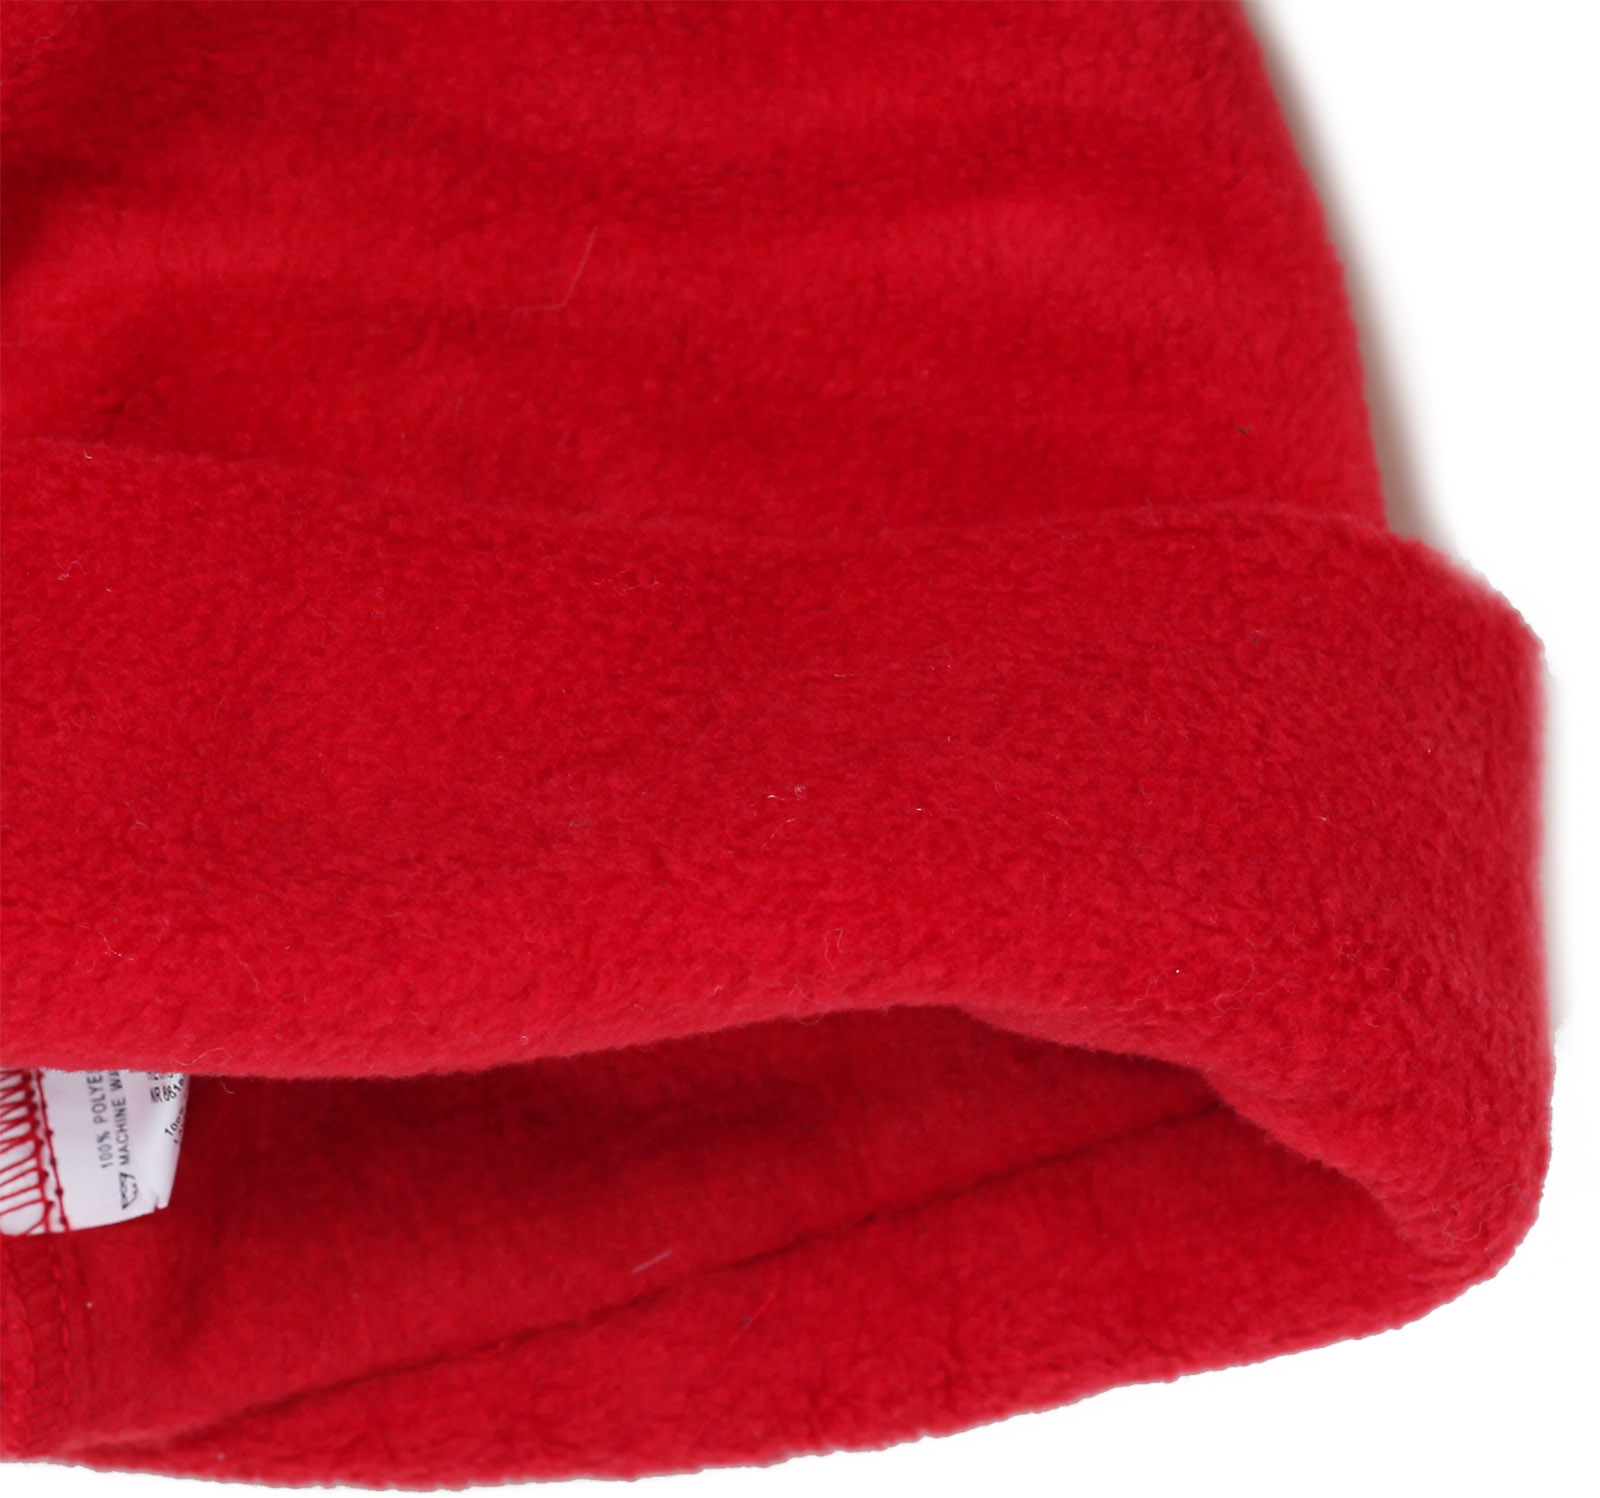 Купить эффектную красную женскую шапку из мягкого флиса на флисовой подкладке по выгодной цене